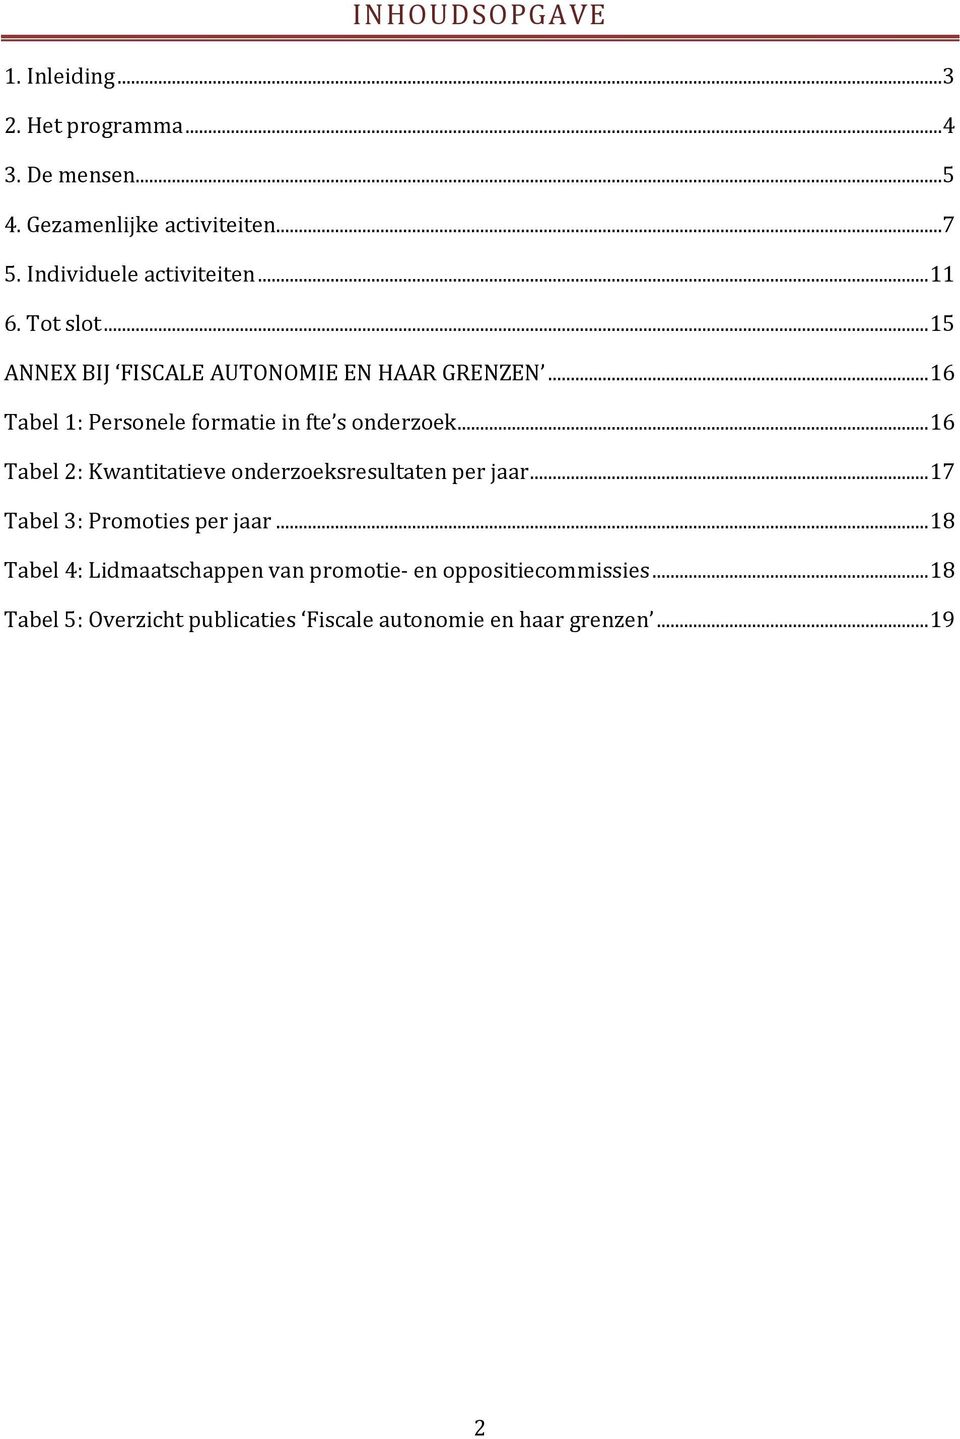 ..16 Tabel 1: Personele formatie in fte s onderzoek...16 Tabel 2: Kwantitatieve onderzoeksresultaten per jaar.